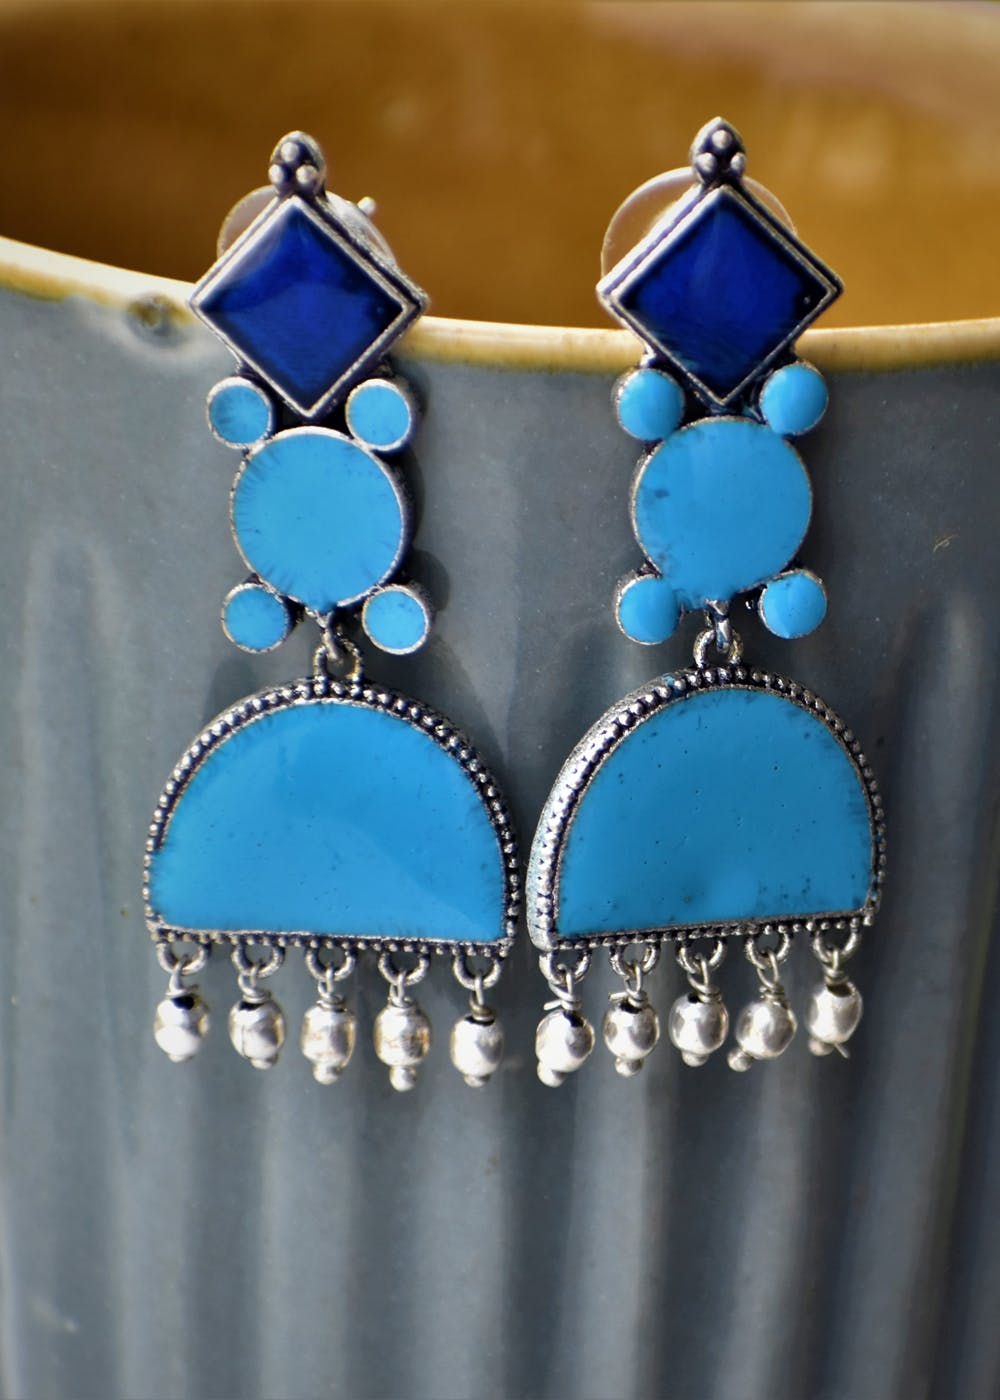 Cornflower blue earrings short drop earrings ceramic bead drops blue drop earrings cornflower blue ceramic drops ceramic earrings